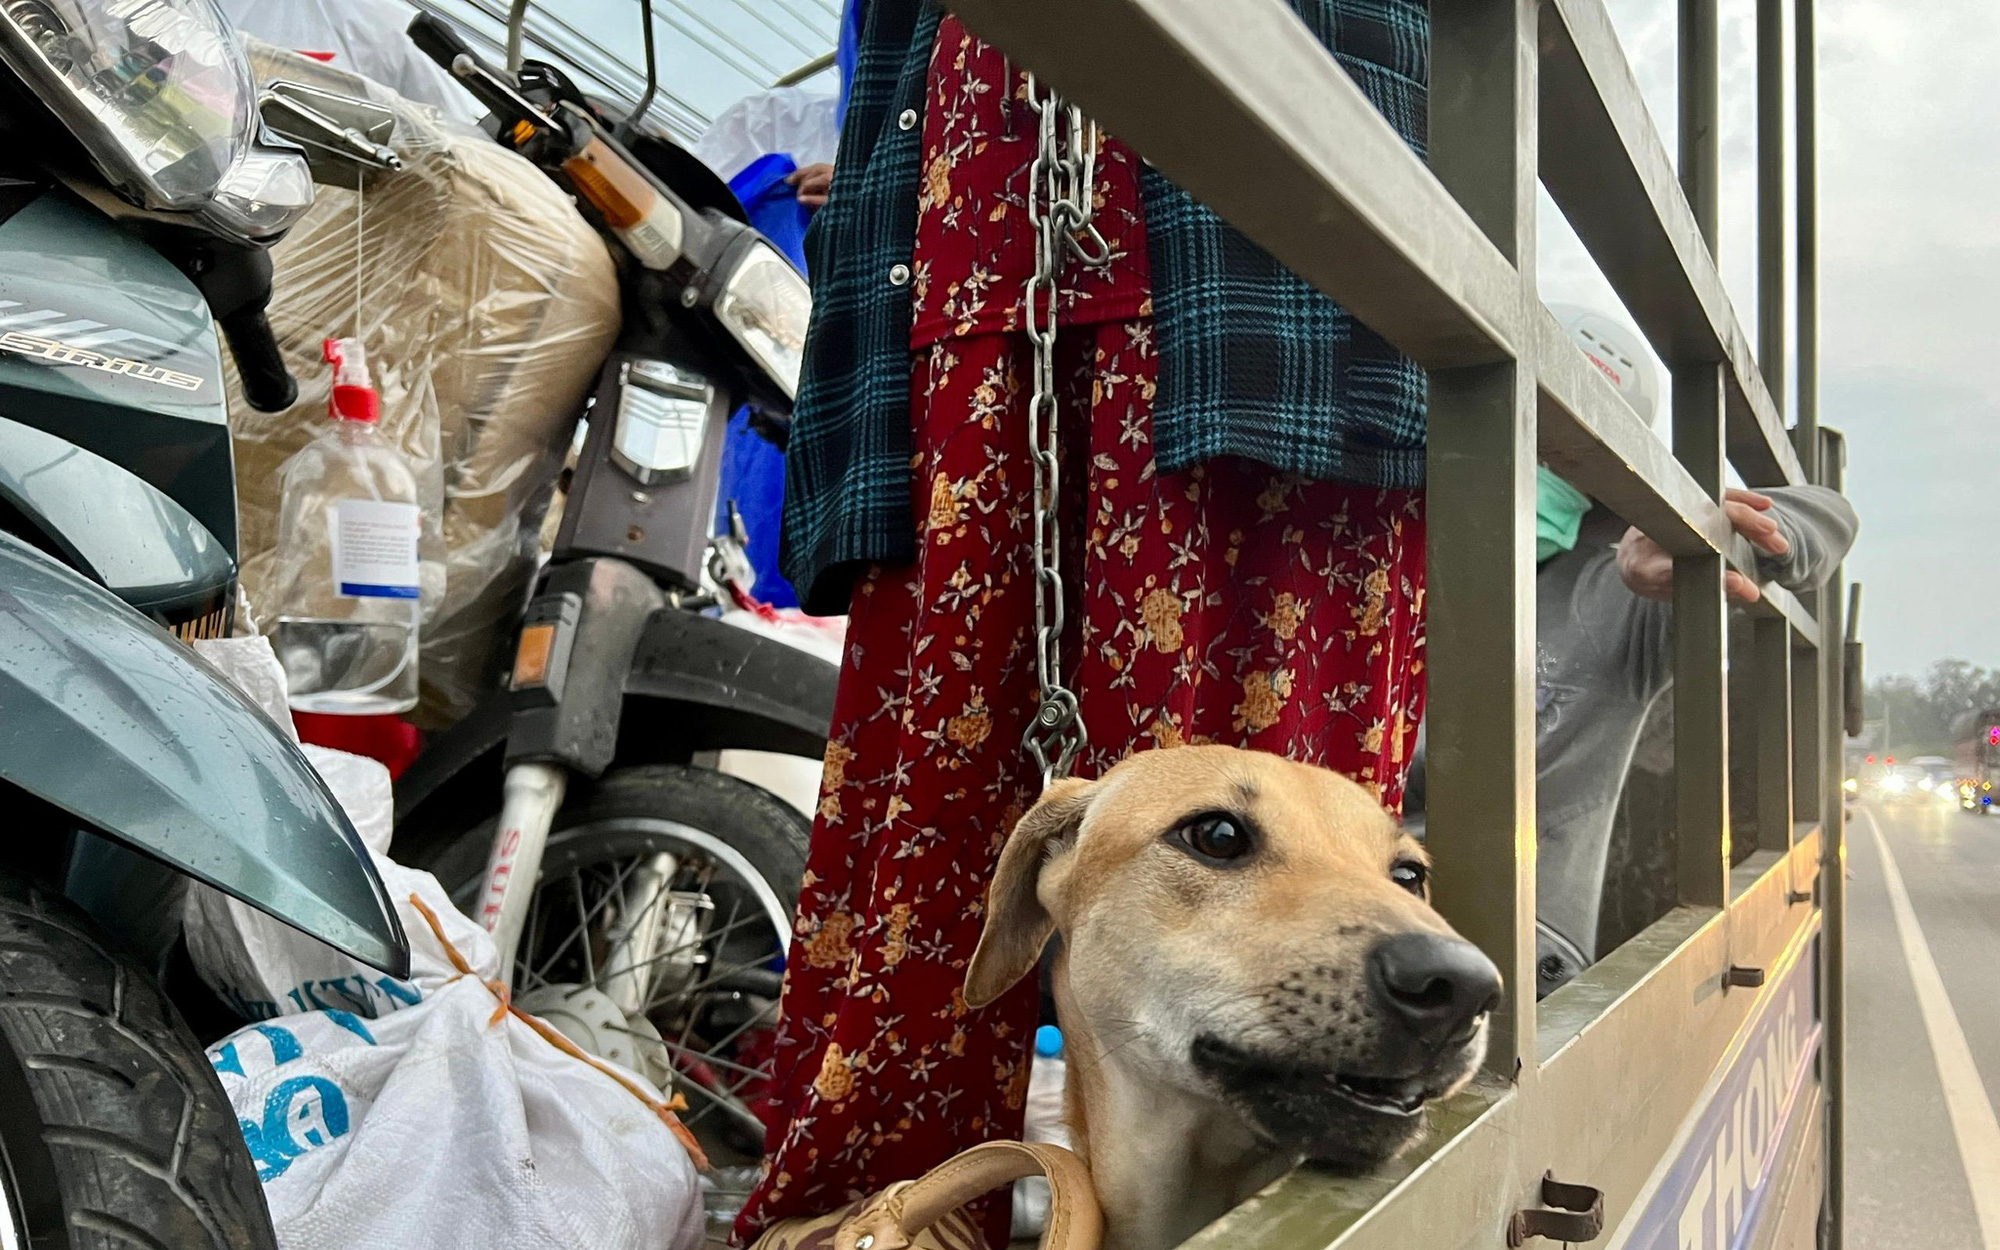 Đoàn tiêu hủy chó: Đoàn tiêu hủy chó đang hoạt động rất tích cực trên khắp các vùng miền, nhằm giúp cho mọi người tiêu diệt được các con chó mang dịch bệnh. Đây chính là một bước quan trọng giúp cho Việt Nam dập được đợt dịch bệnh lần này.